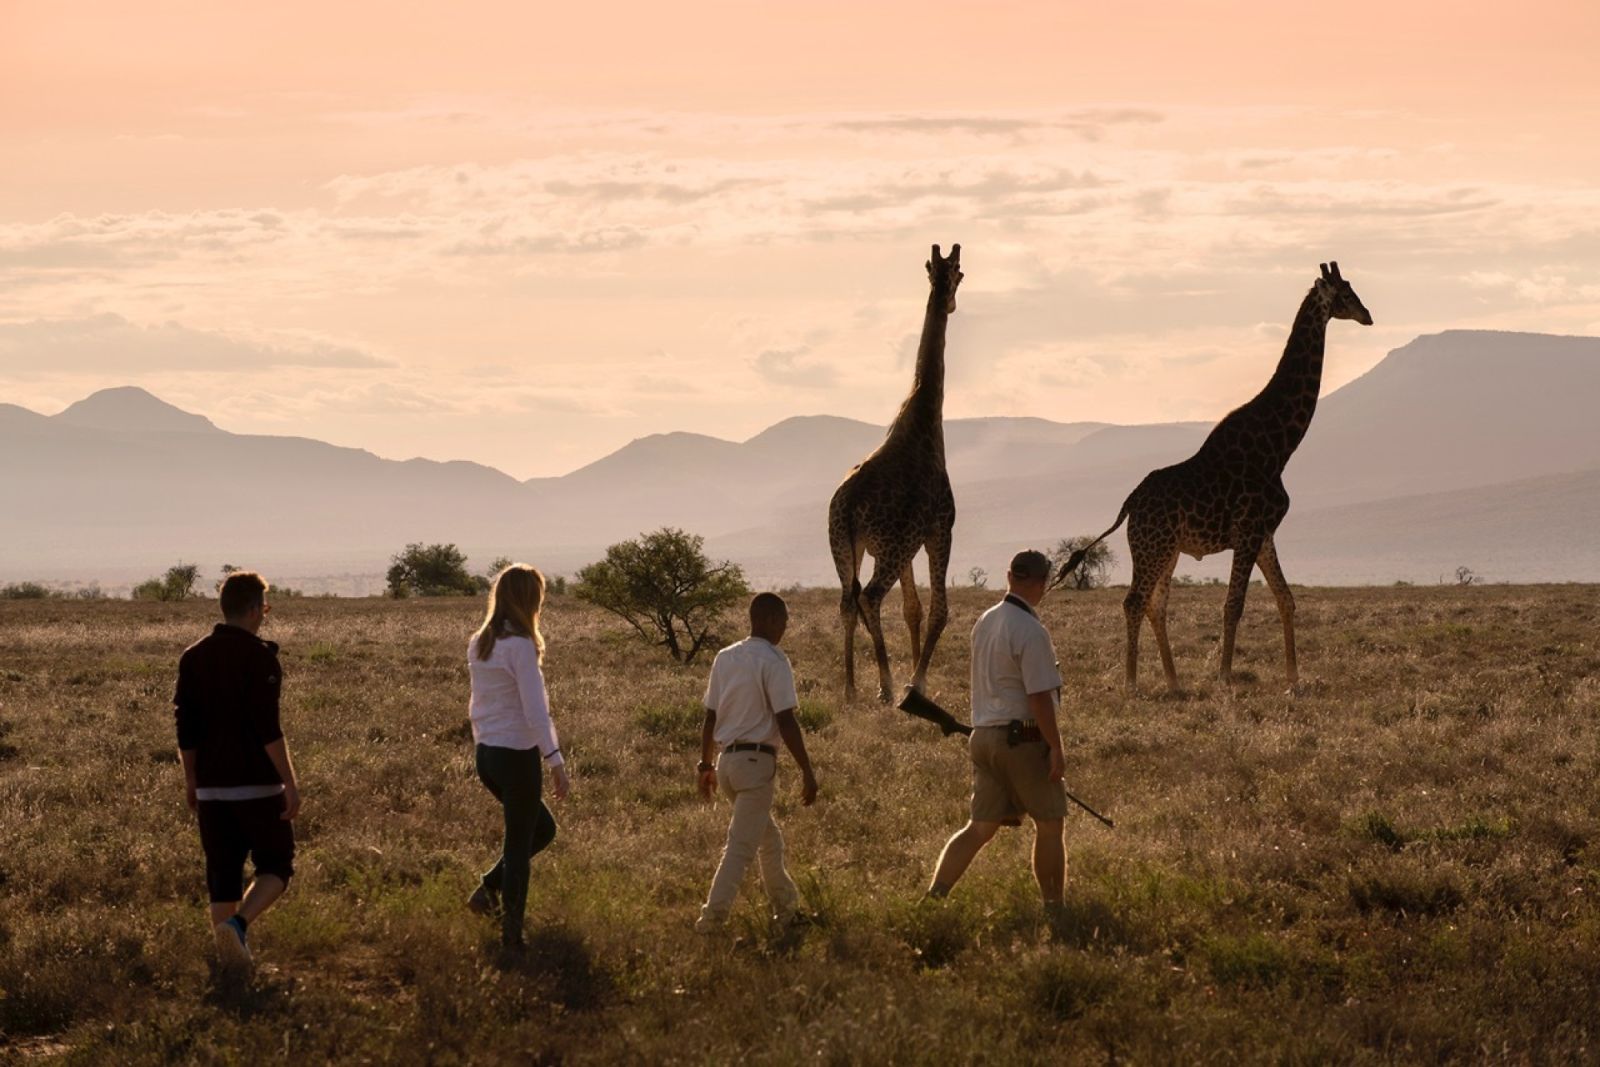 Giraffe tracking bush walk samara karoo mountains landscape dook